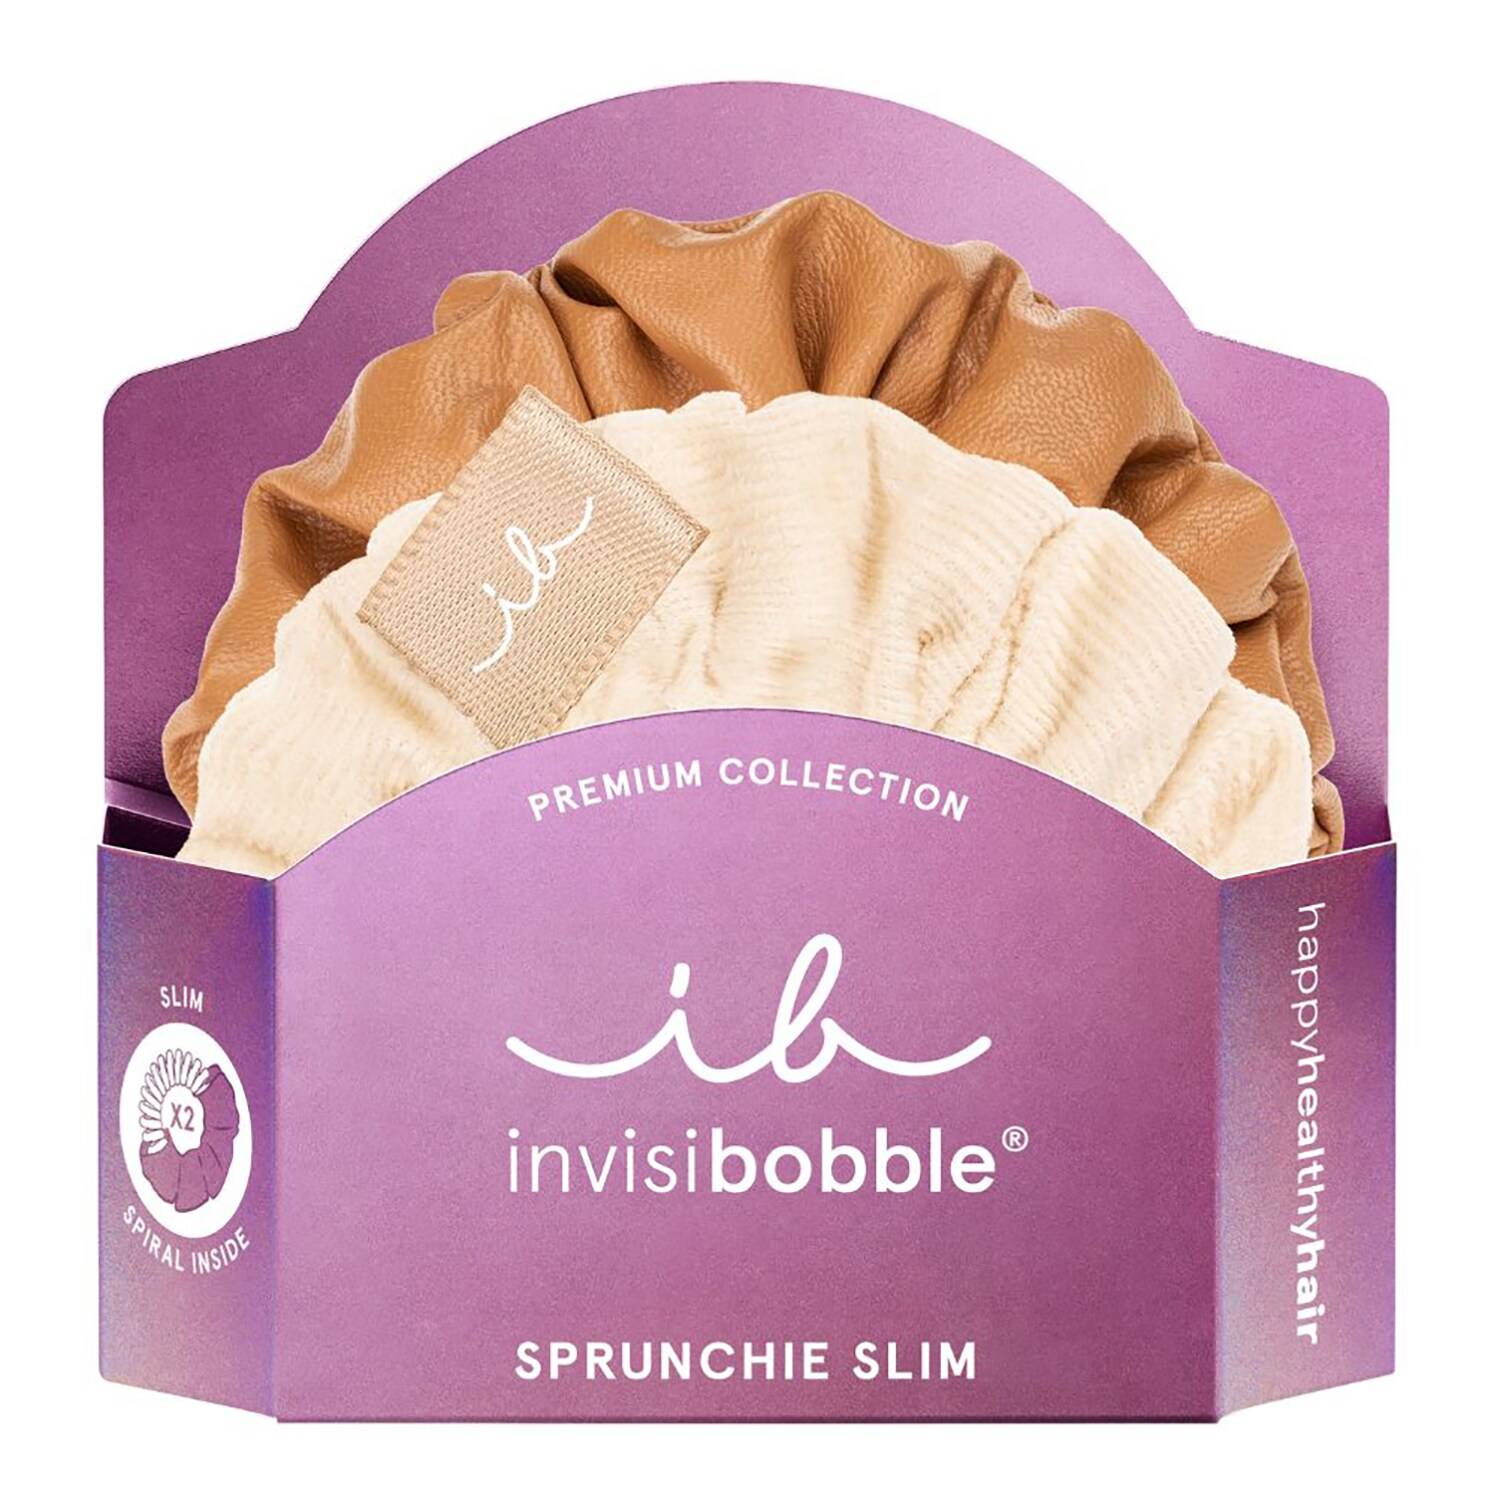 Invisibobble Sprunchie Slim Premium Creme De Caramel Hair Scrunchies Set